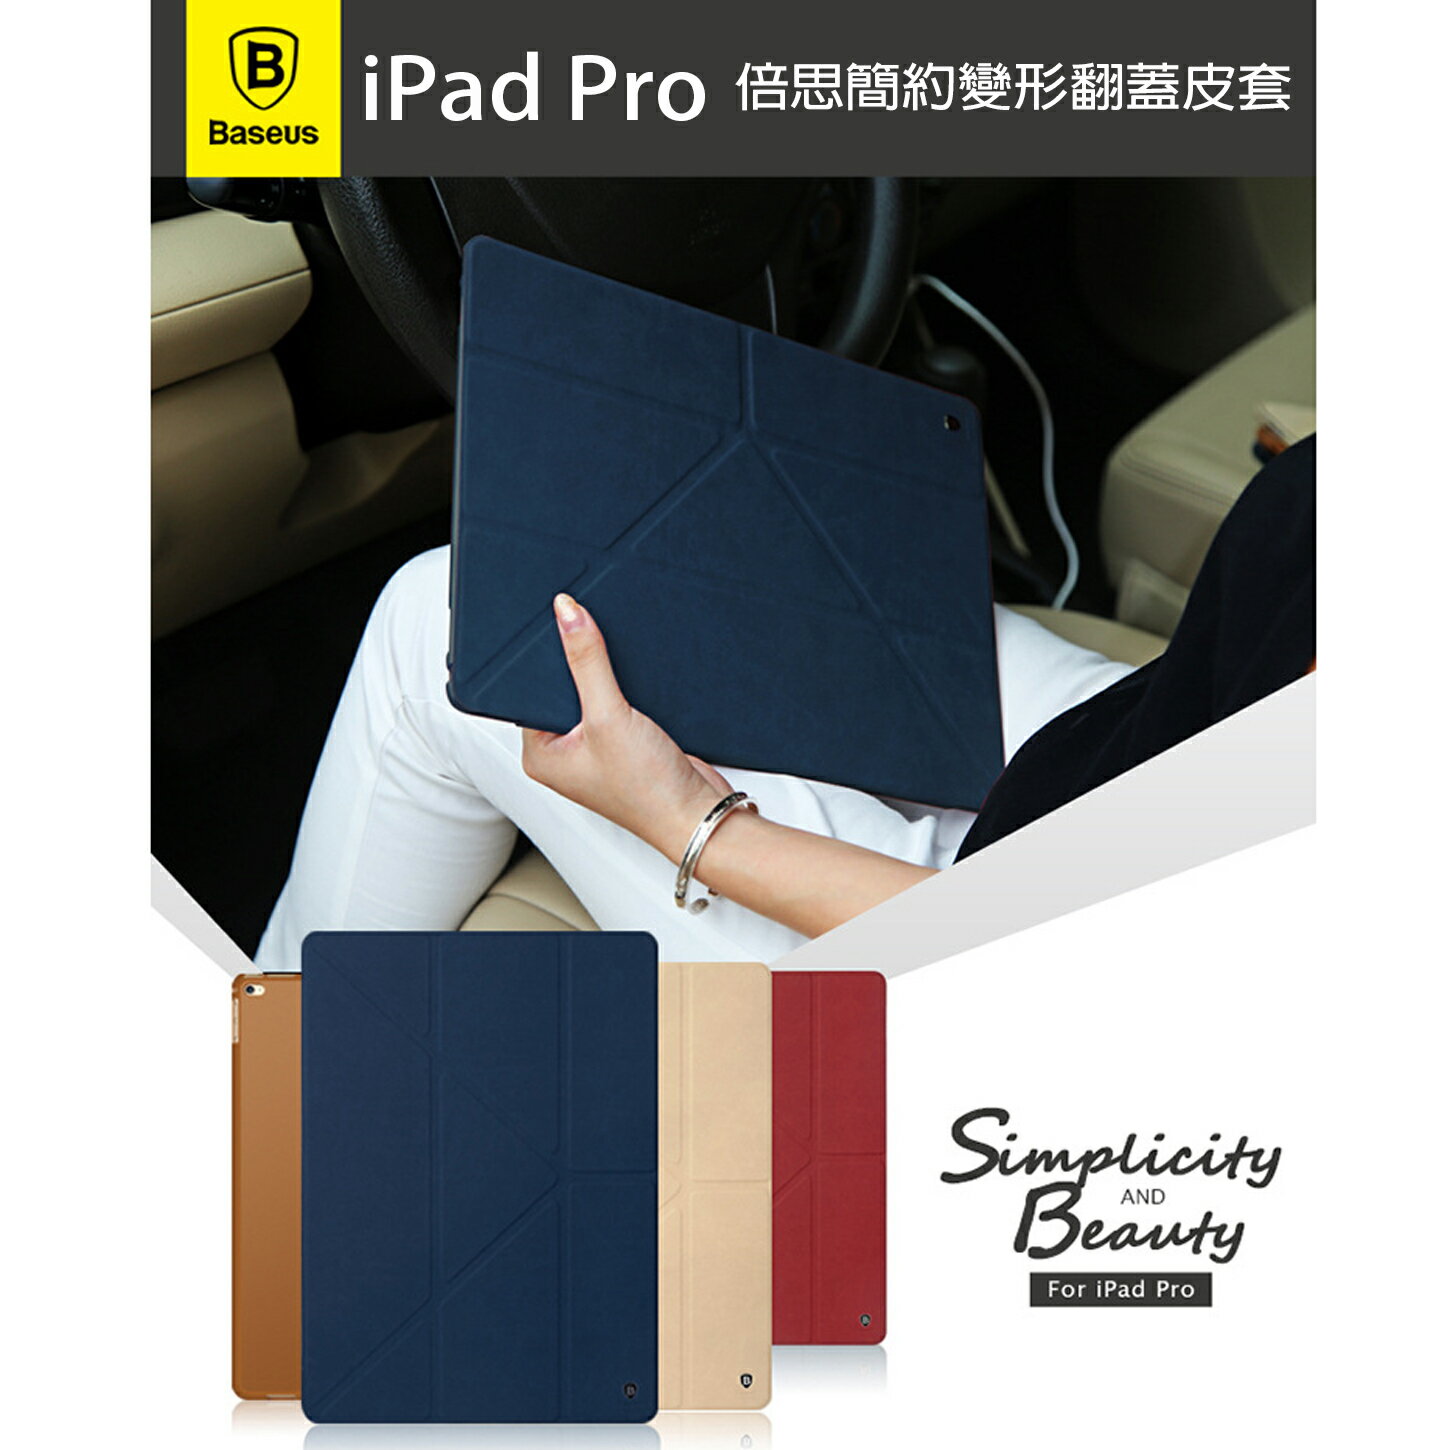 【當日出貨】iPad Pro 倍思簡約變型翻蓋皮套 韓國麂皮 智慧休眠 百變可立皮套 保護套 ROCK-MOOD  